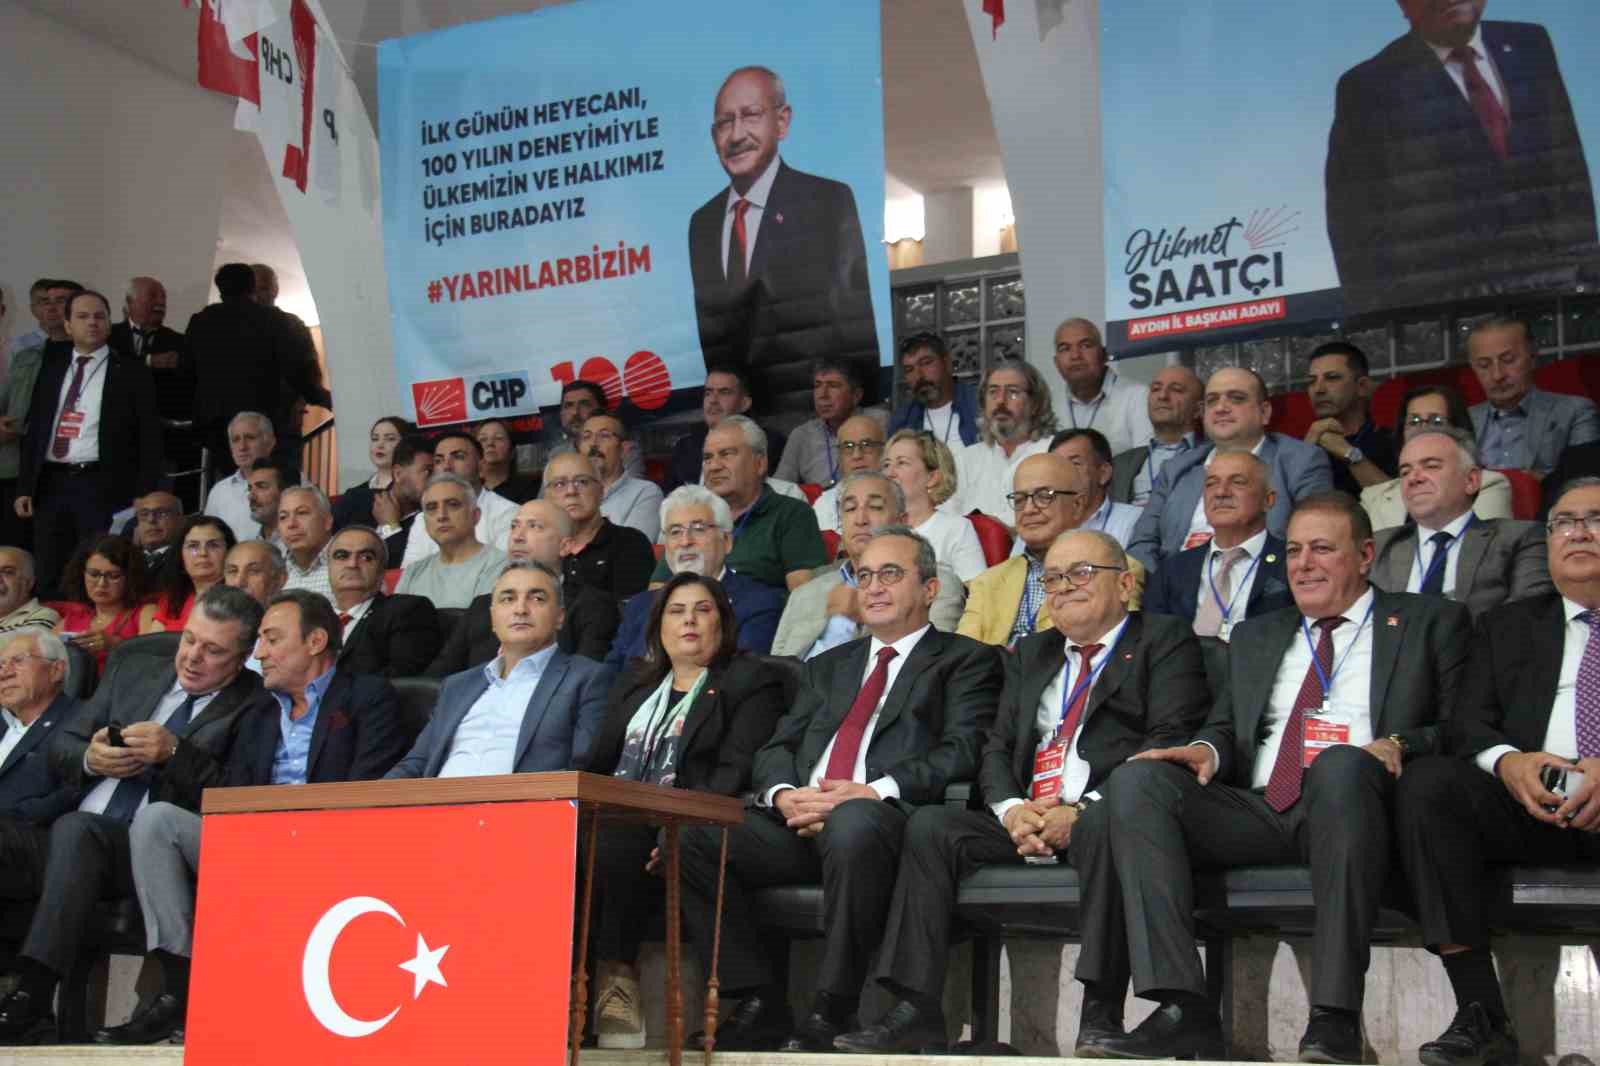 Başkan Çerçioğlu: “12 buçuk milyarlık yatırım yaptık”